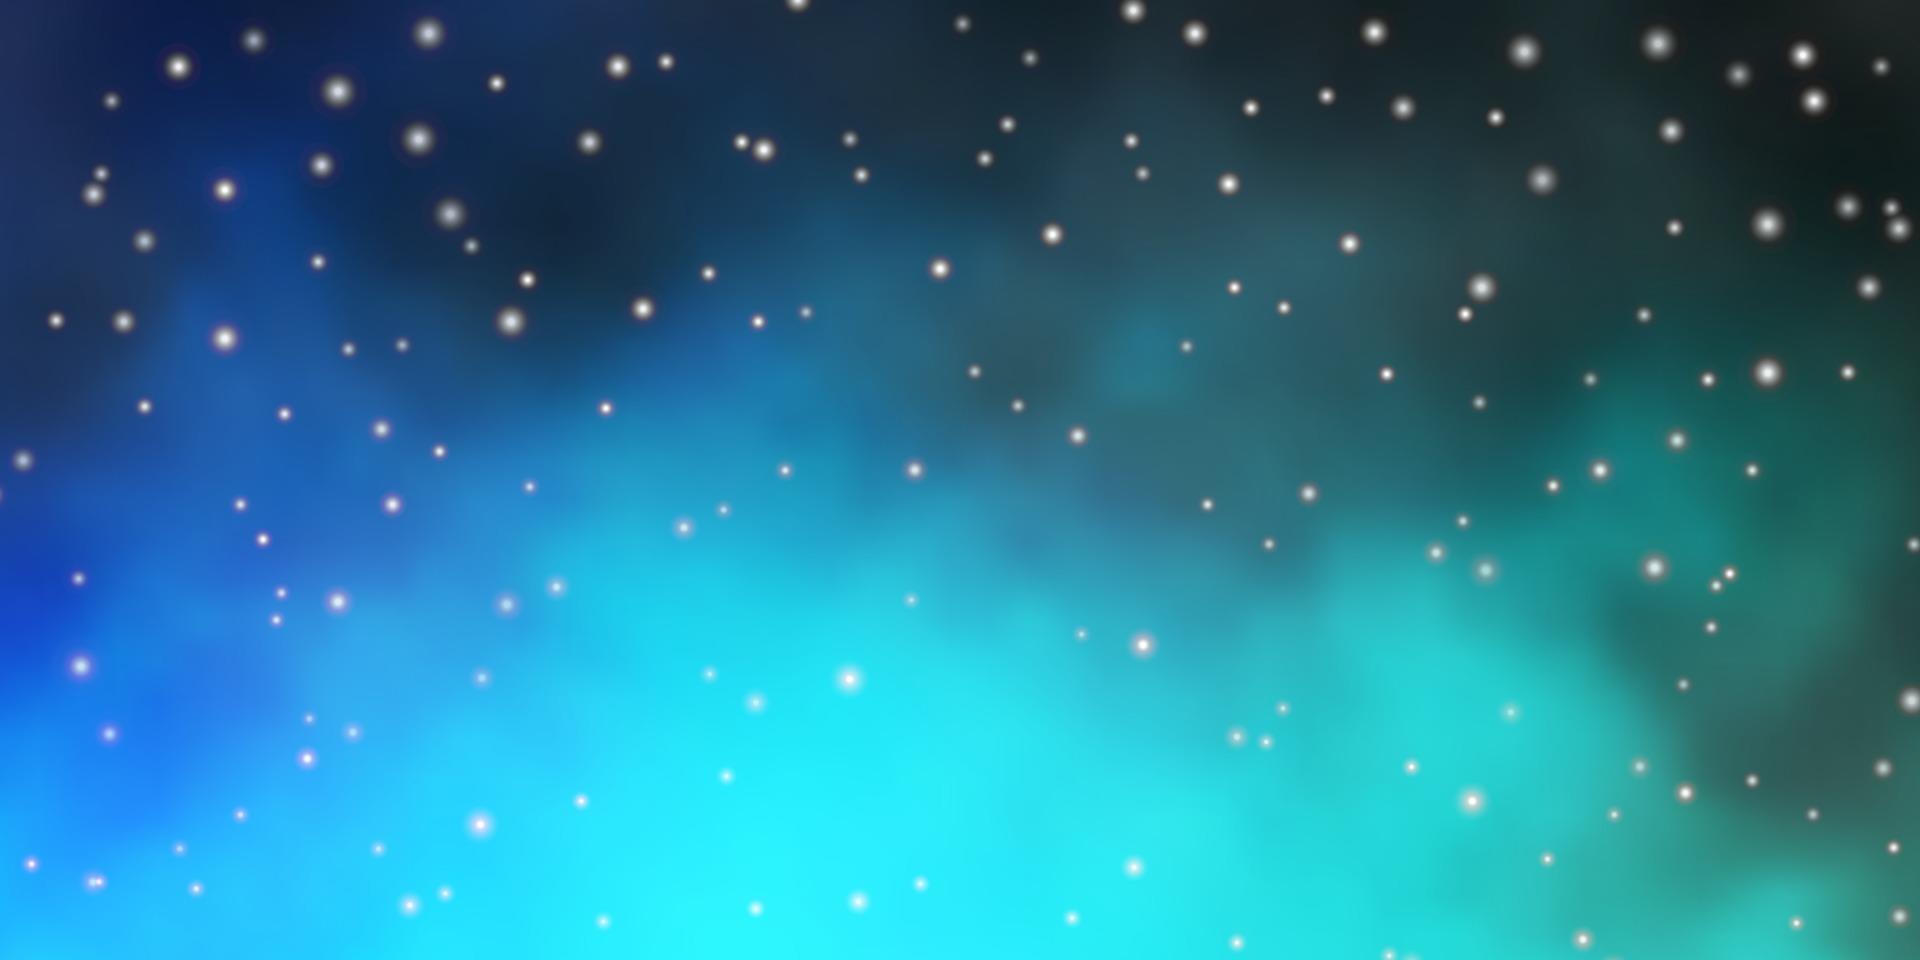 modèle vectoriel bleu clair, vert avec des étoiles abstraites.